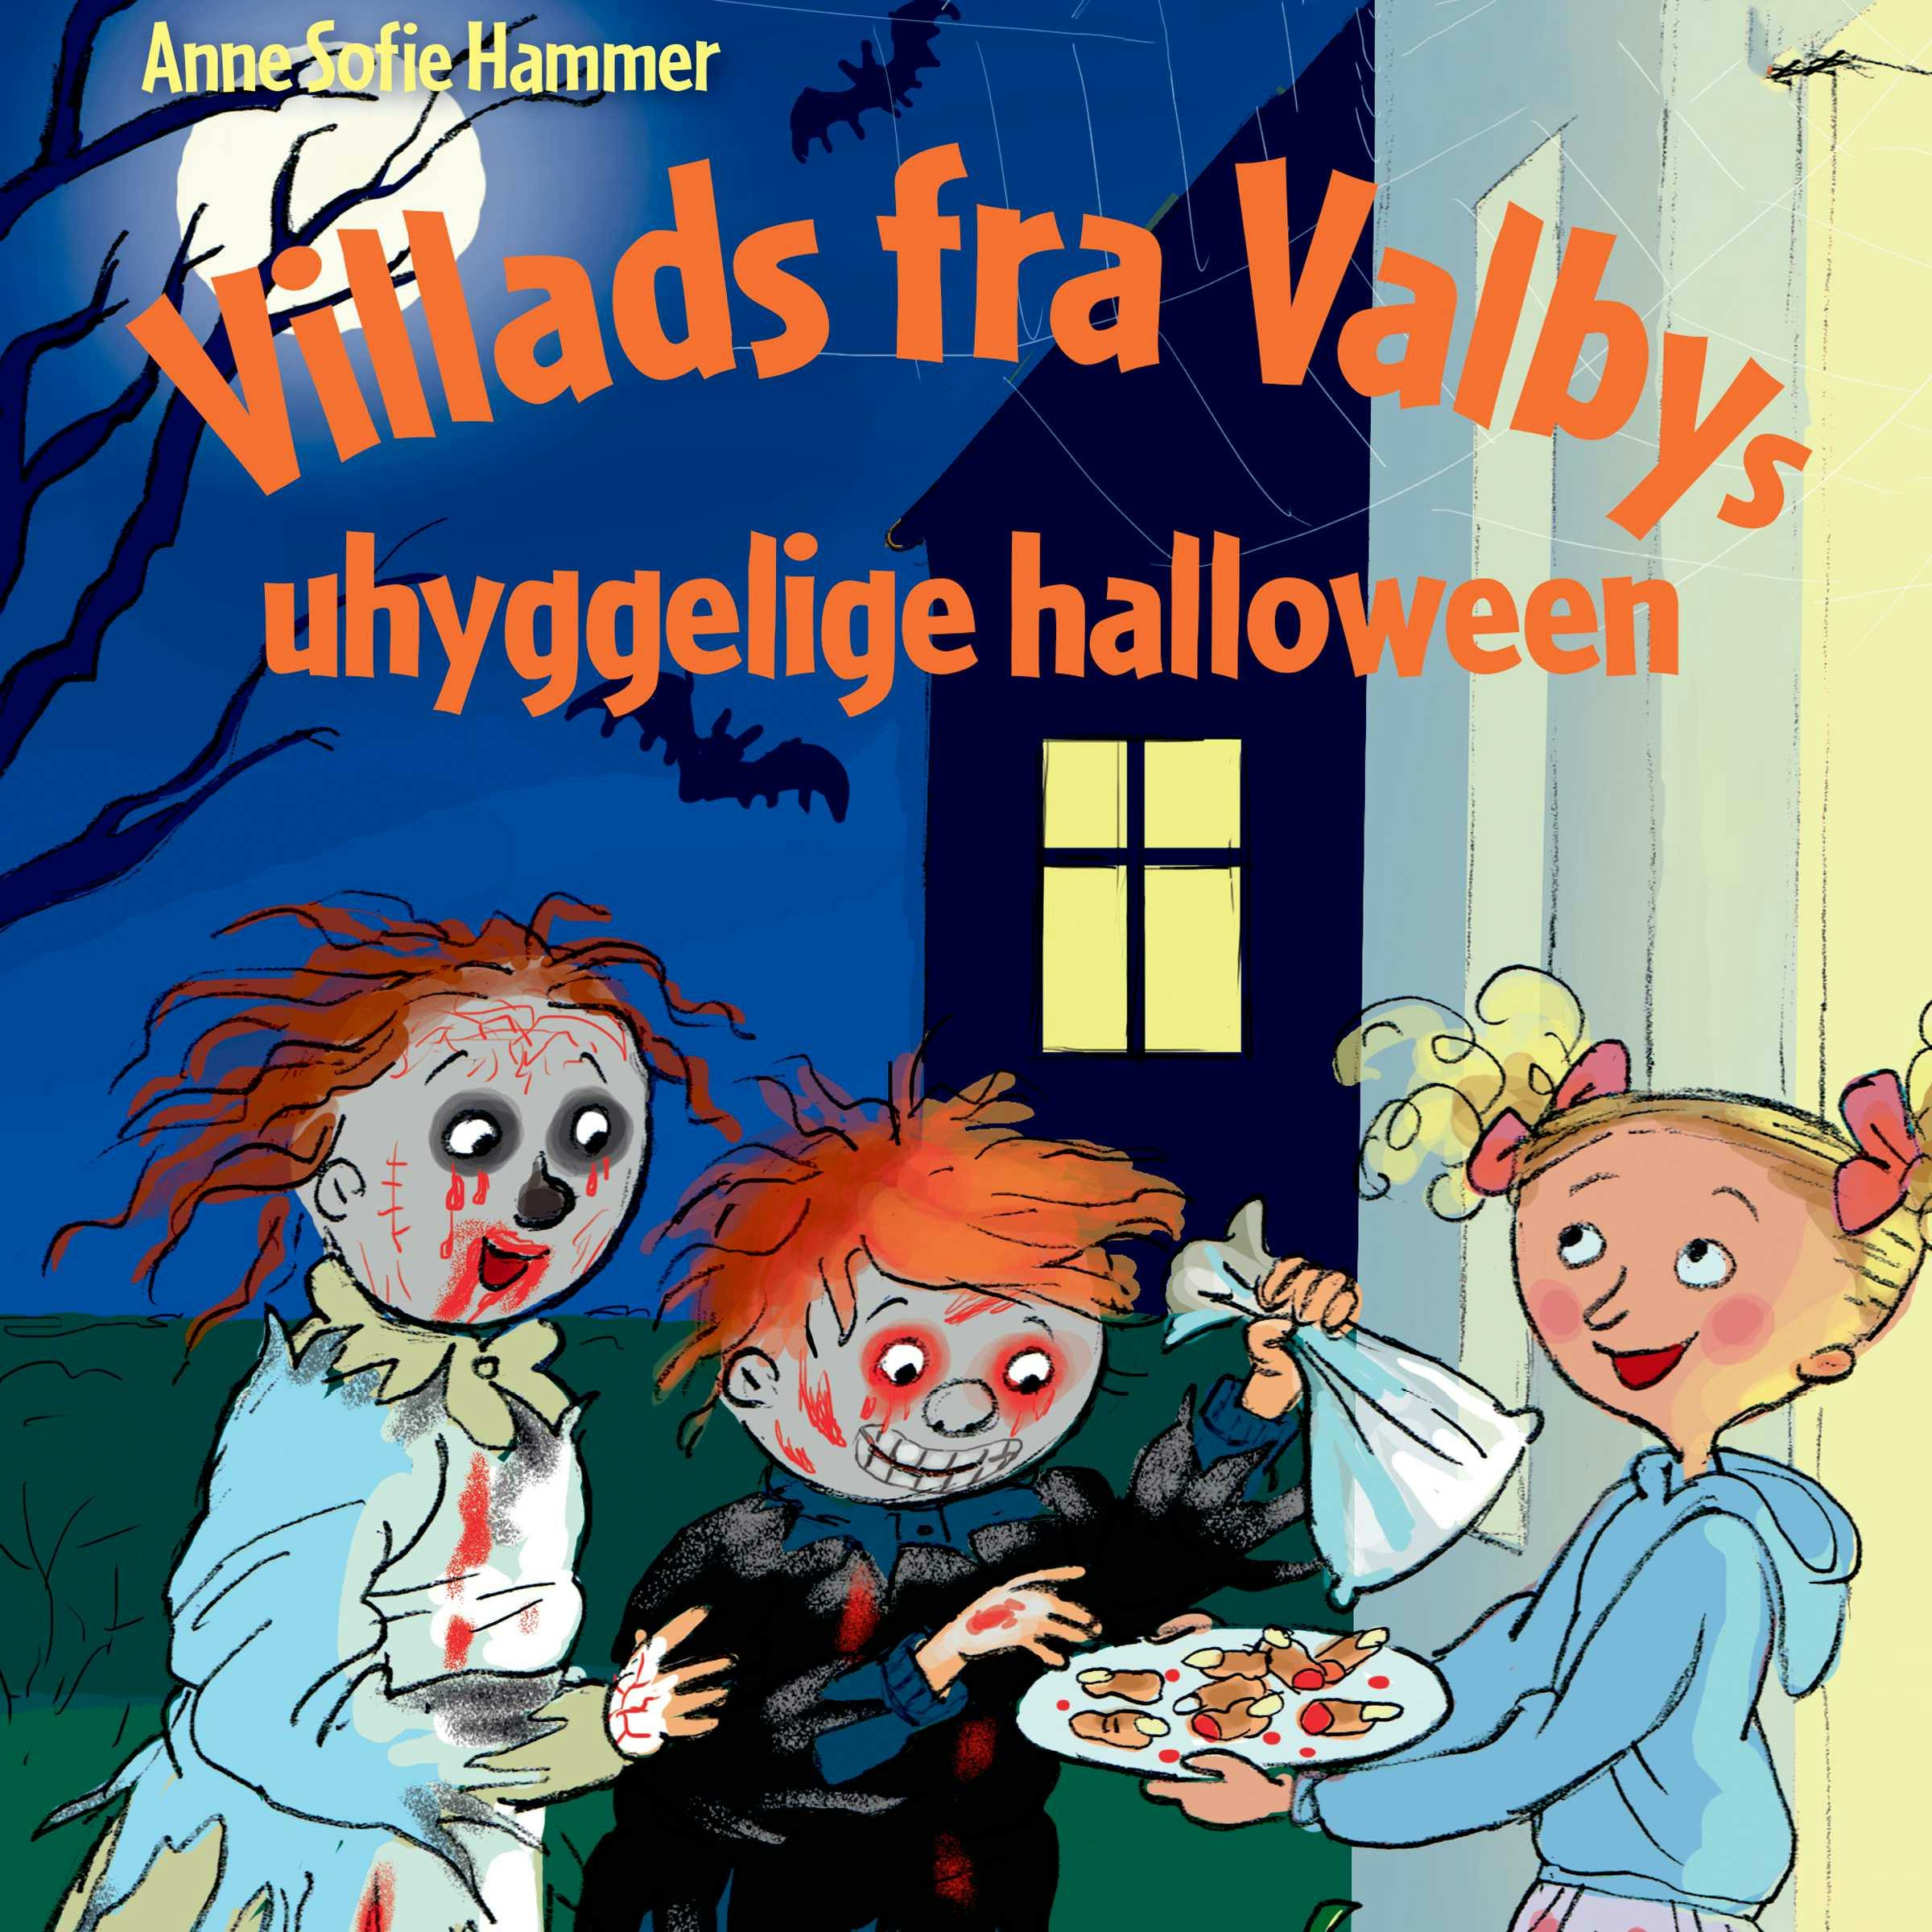 Villads fra Valbys uhyggelige halloween LYT&LÆS - Anne Sofie Hammer